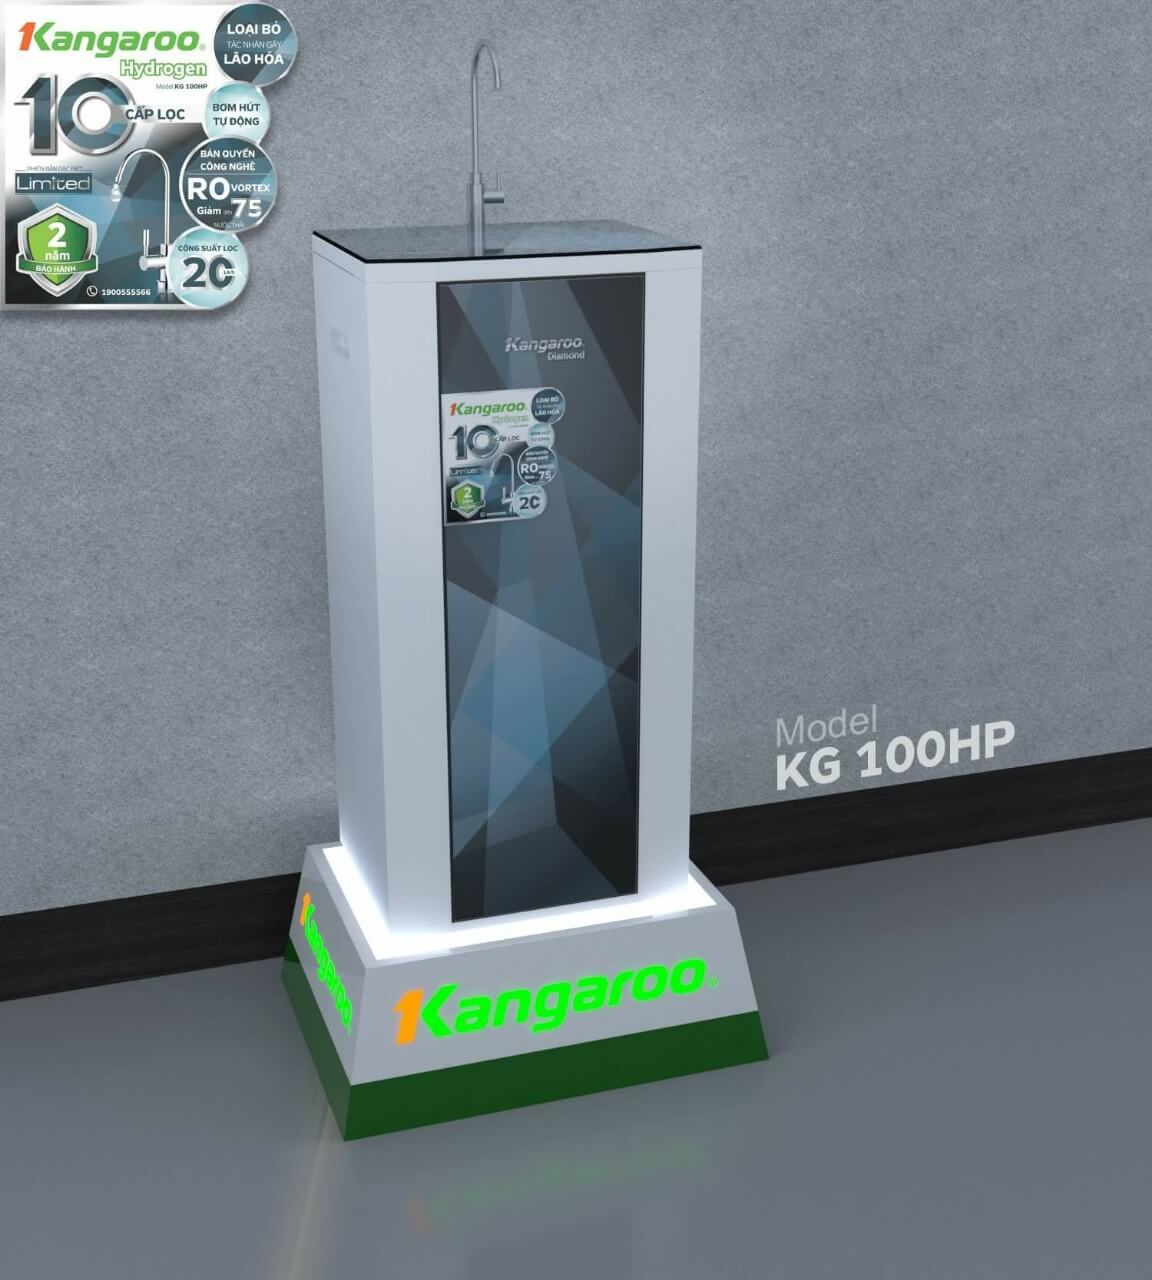 Bạn hoàn toàn yên tâm khi sử dụng máy lọc nước của thương hiệu Kangaroo